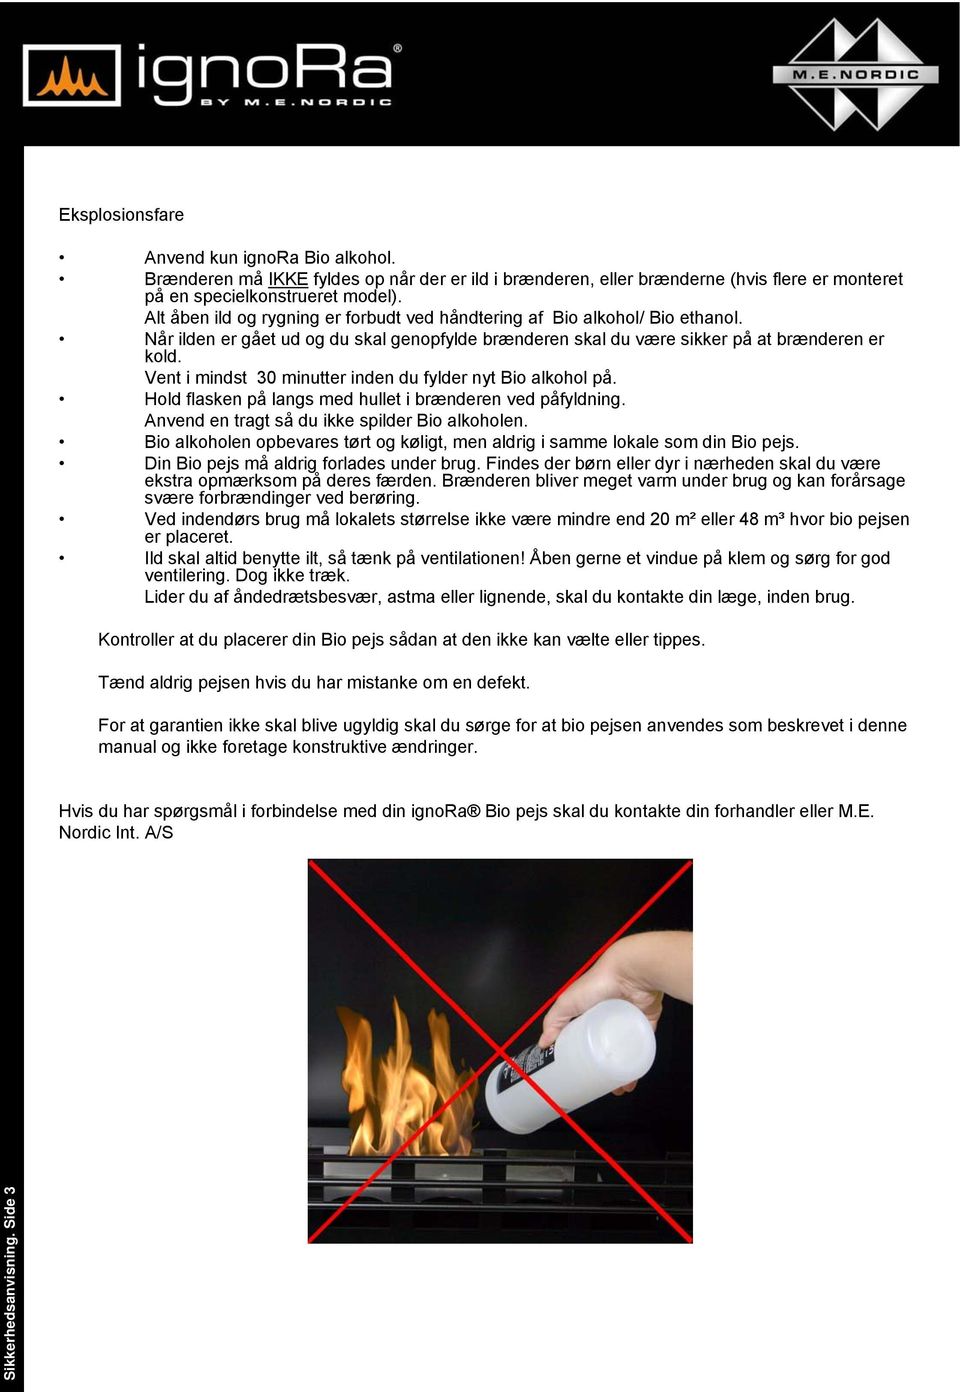 Alt åben ild og rygning er forbudt ved håndtering af Bio alkohol/ Bio ethanol. Når ilden er gået ud og du skal genopfylde brænderen skal du være sikker på at brænderen er kold.